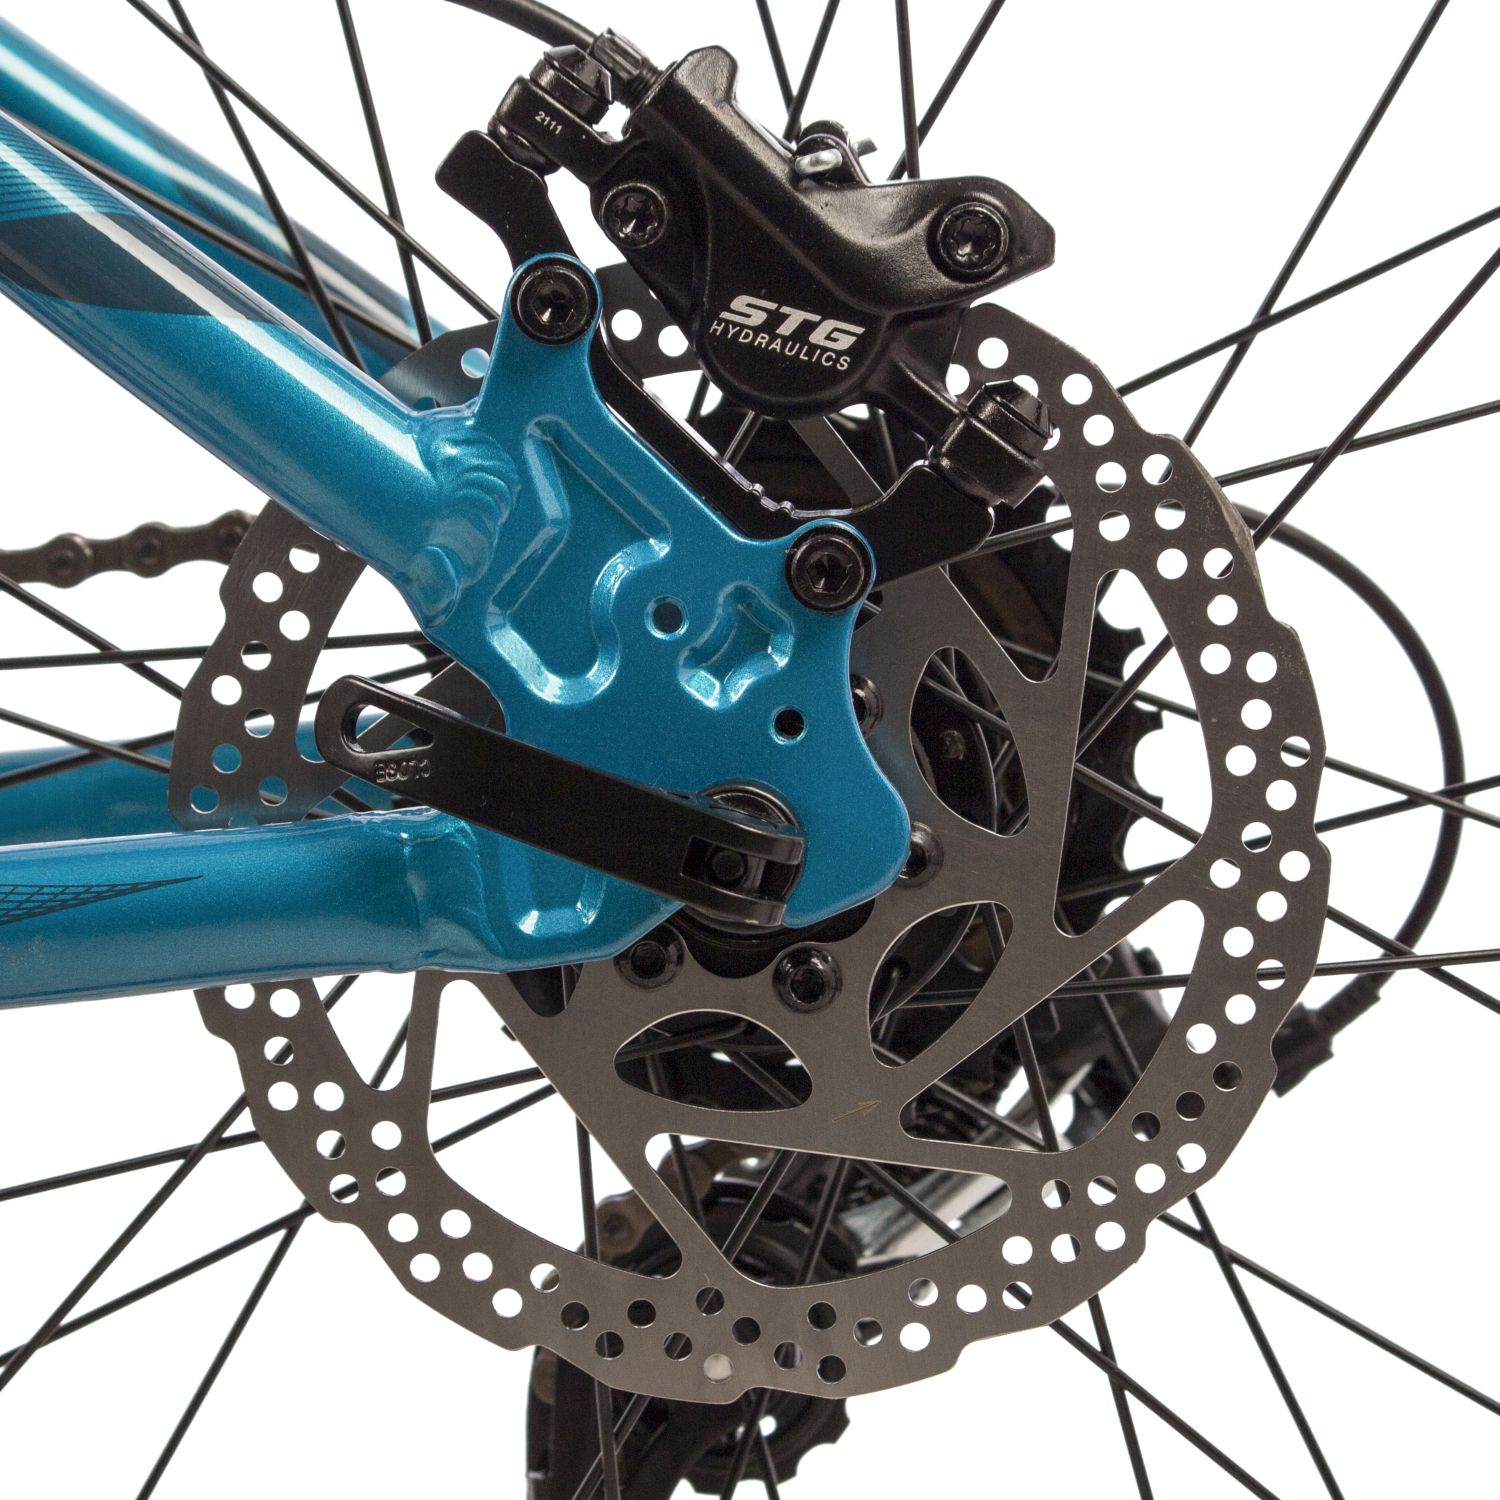 Женский велосипед Stinger Laguna Pro SE 26, год 2022, цвет Синий, ростовка 17